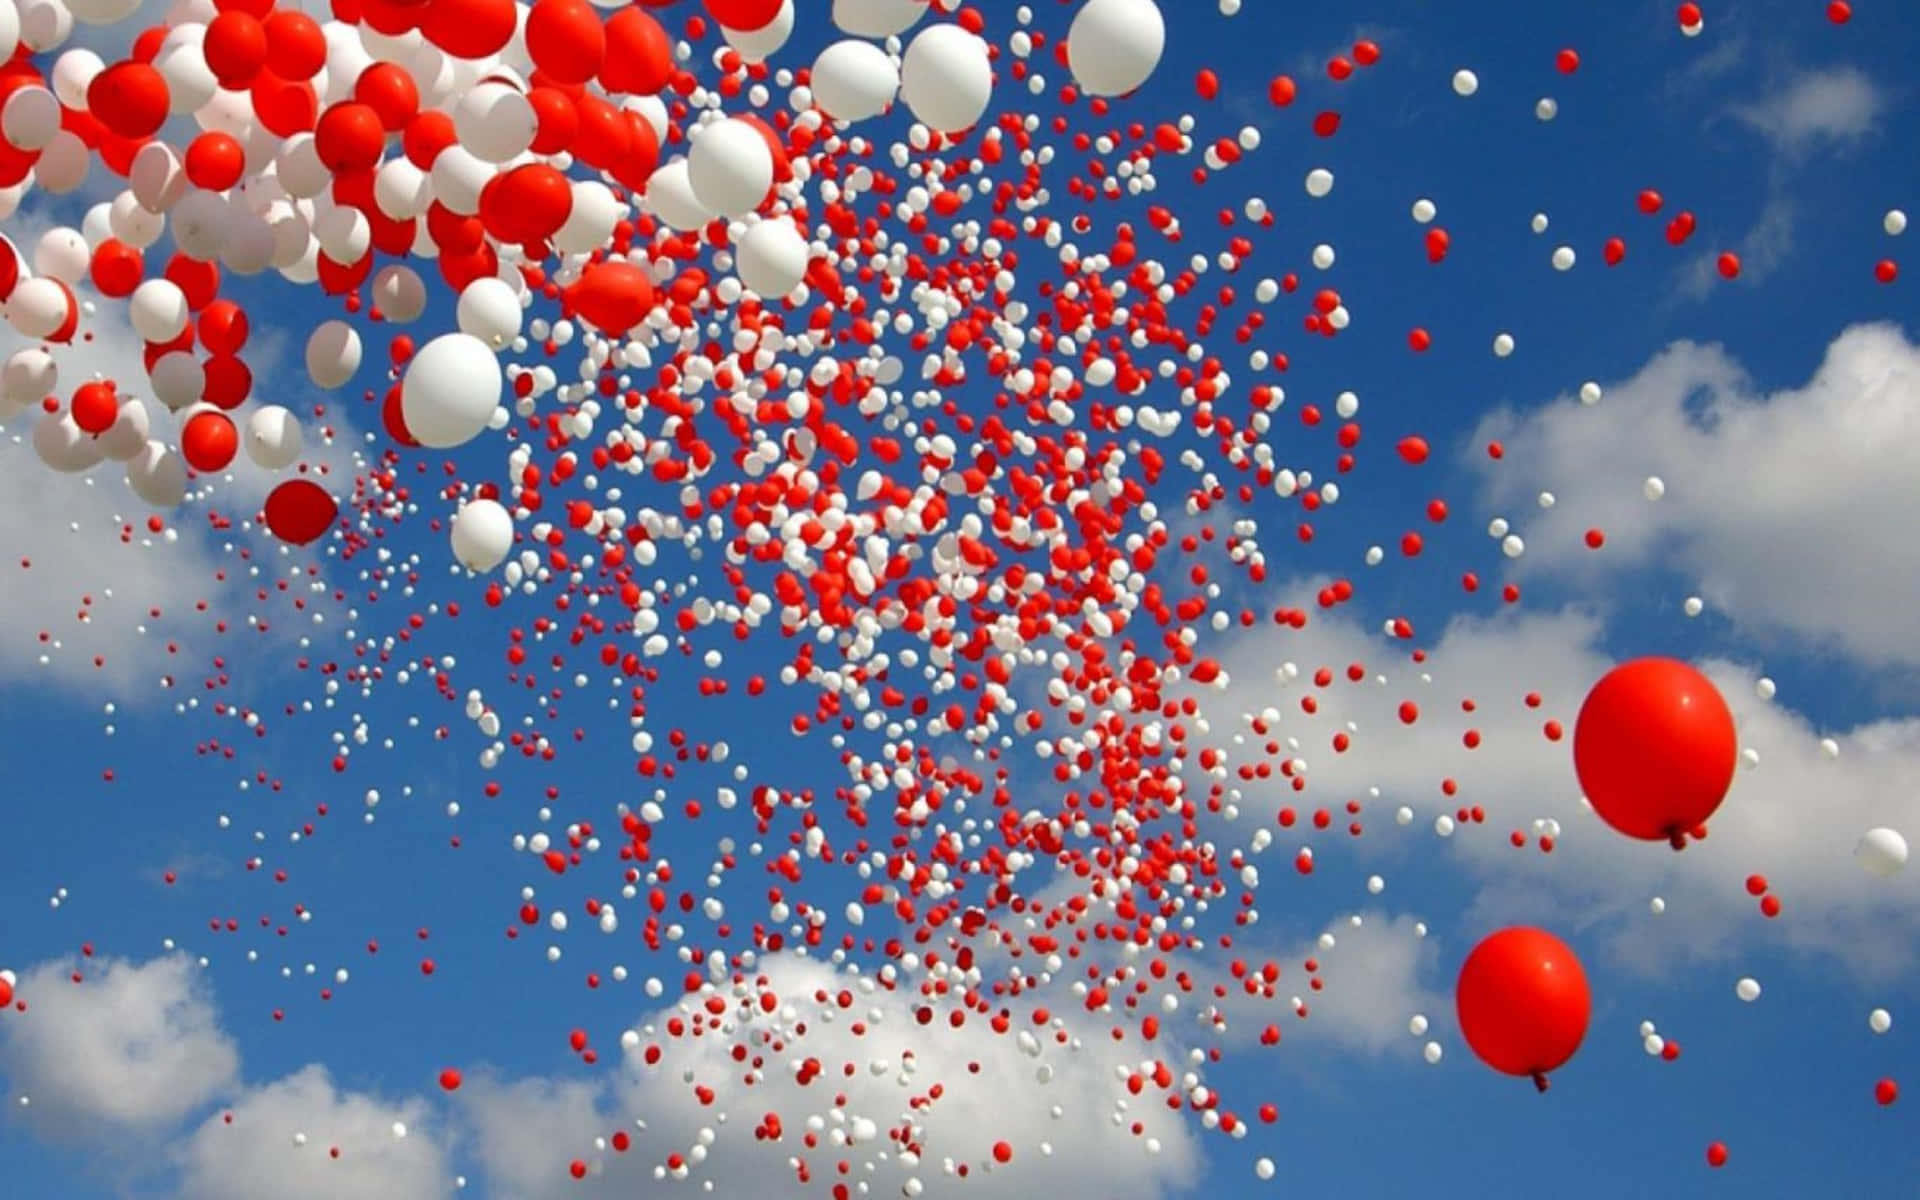 Redand White Balloons Against Blue Sky Wallpaper